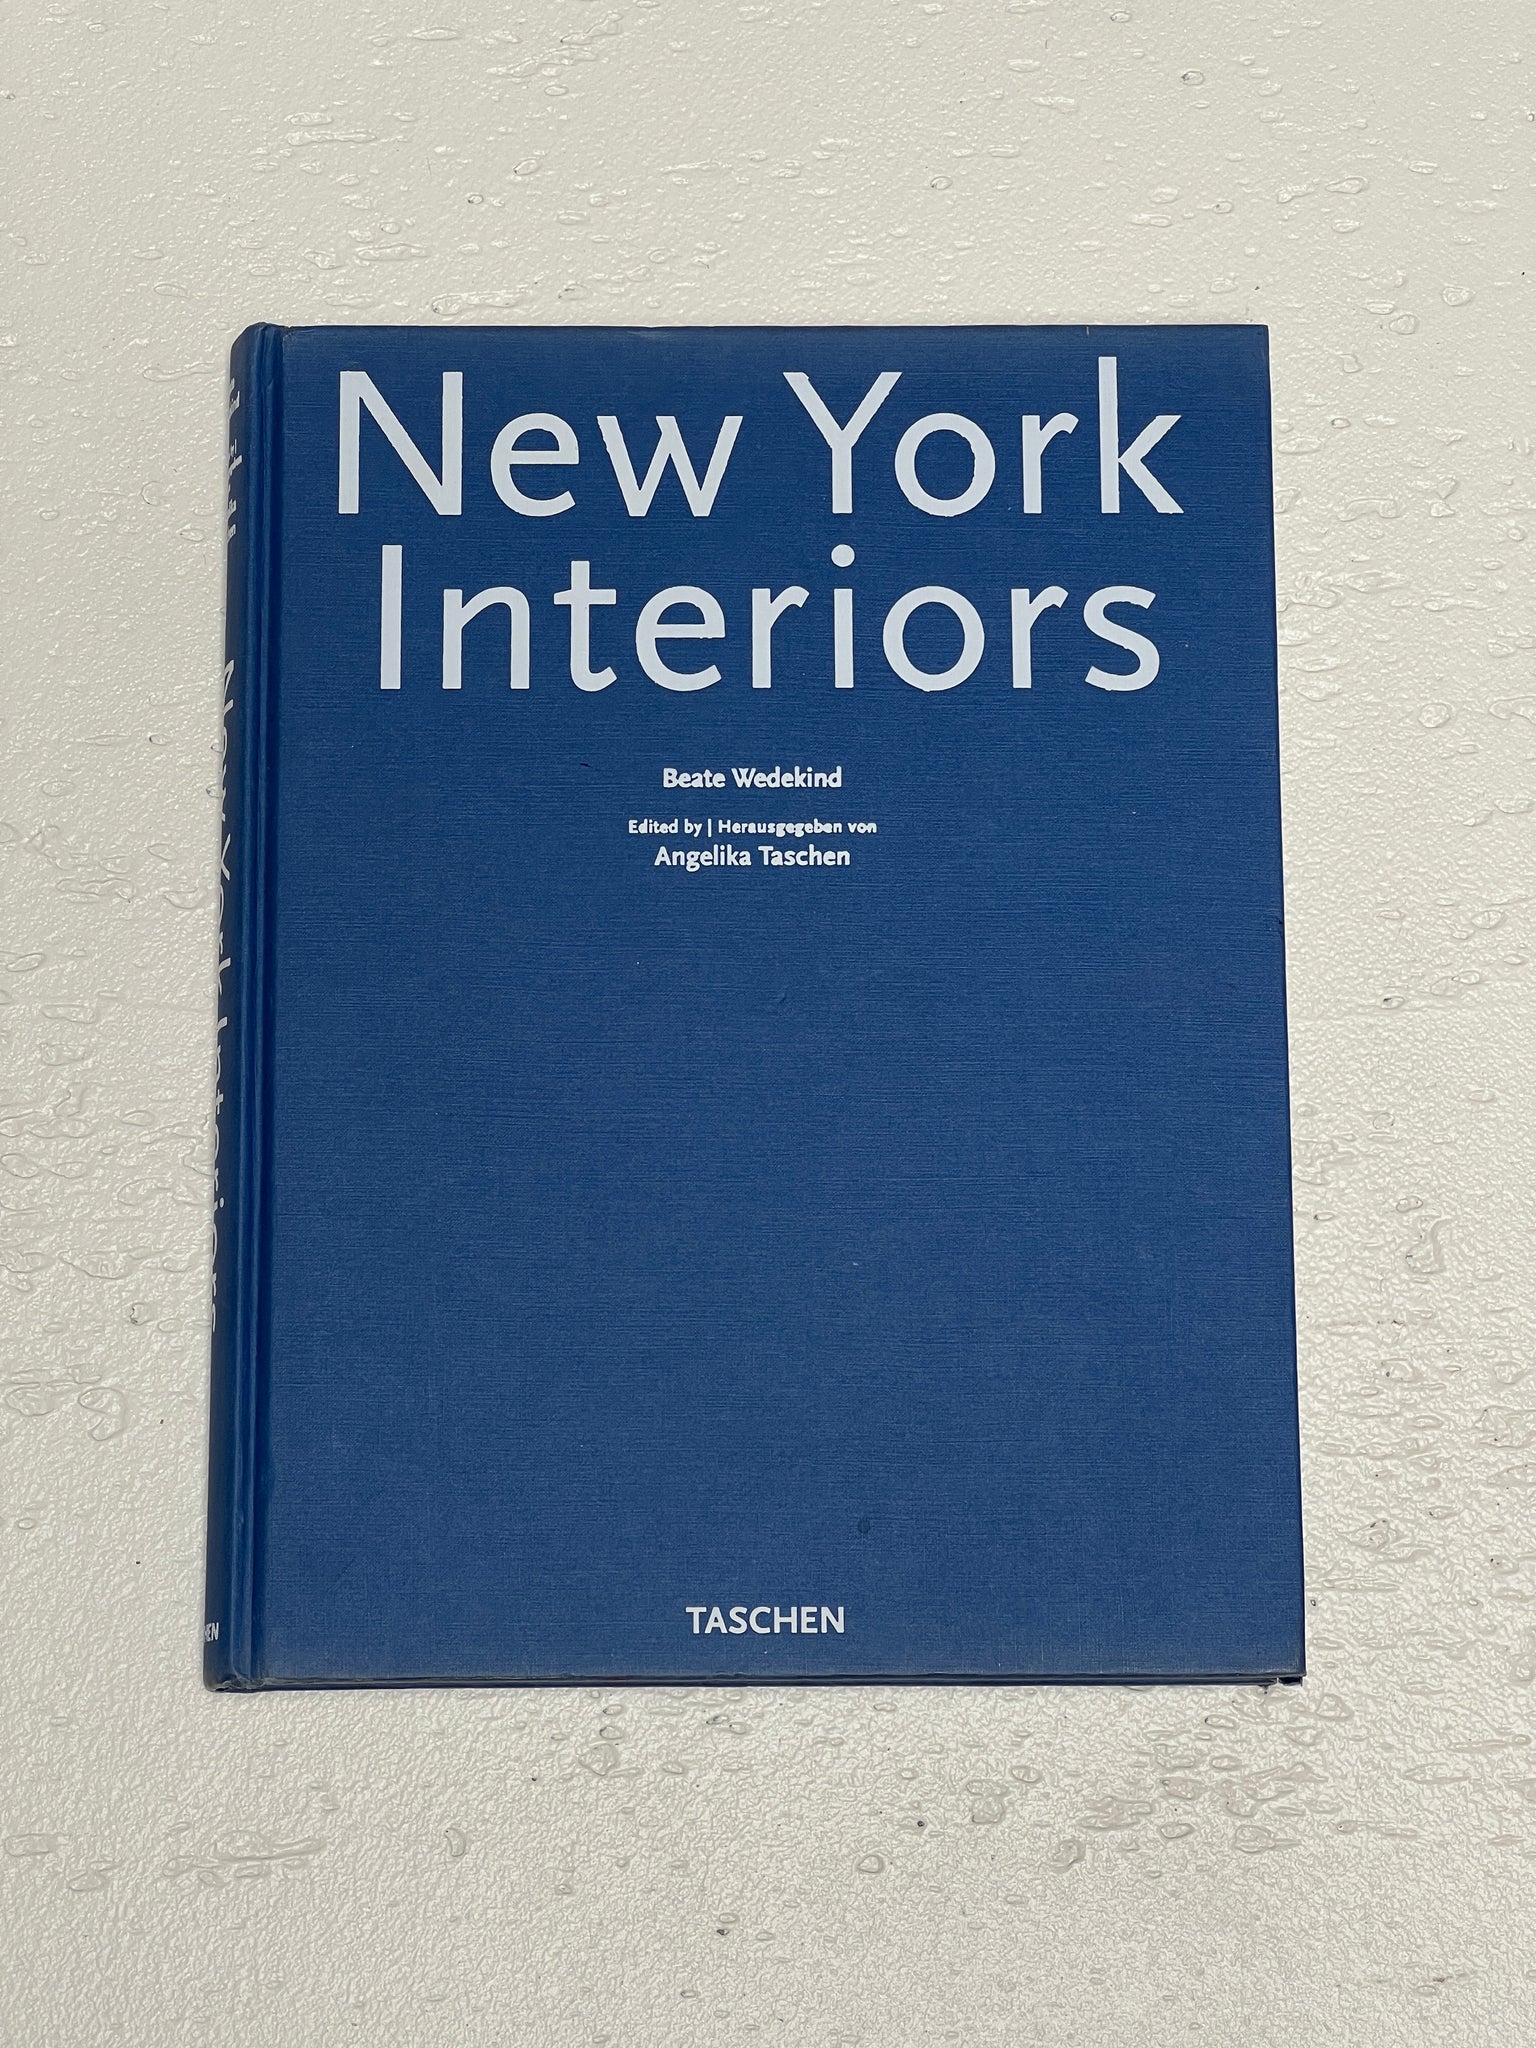 New York Interiors, 1990s